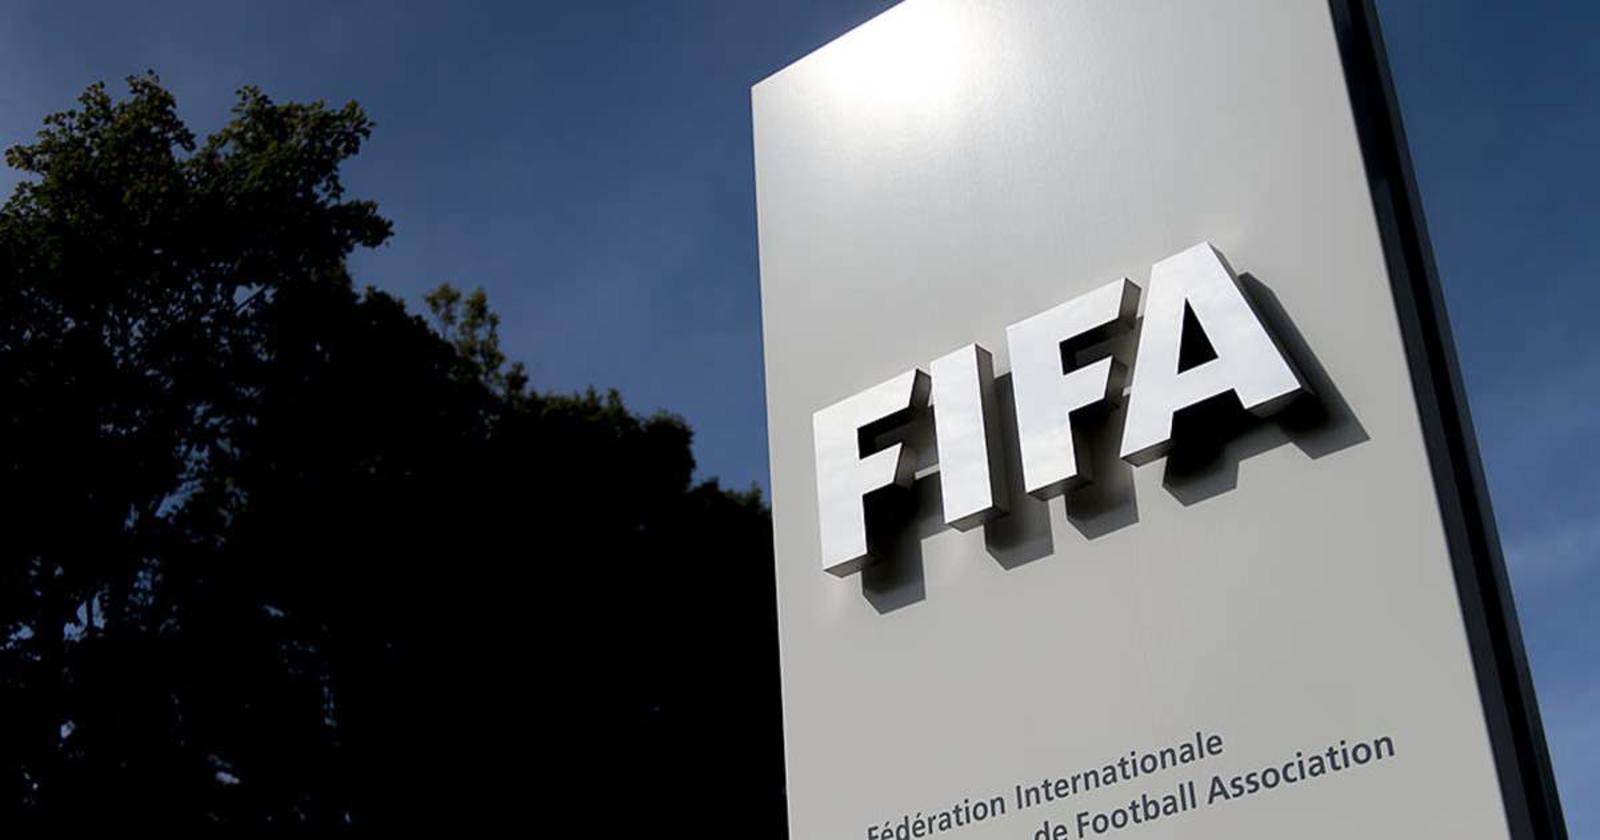 Las sanciones comunicadas este miércoles por la FIFA impiden a todos ellos ejercer cualquier actividad relacionada con el fútbol. (Especial)